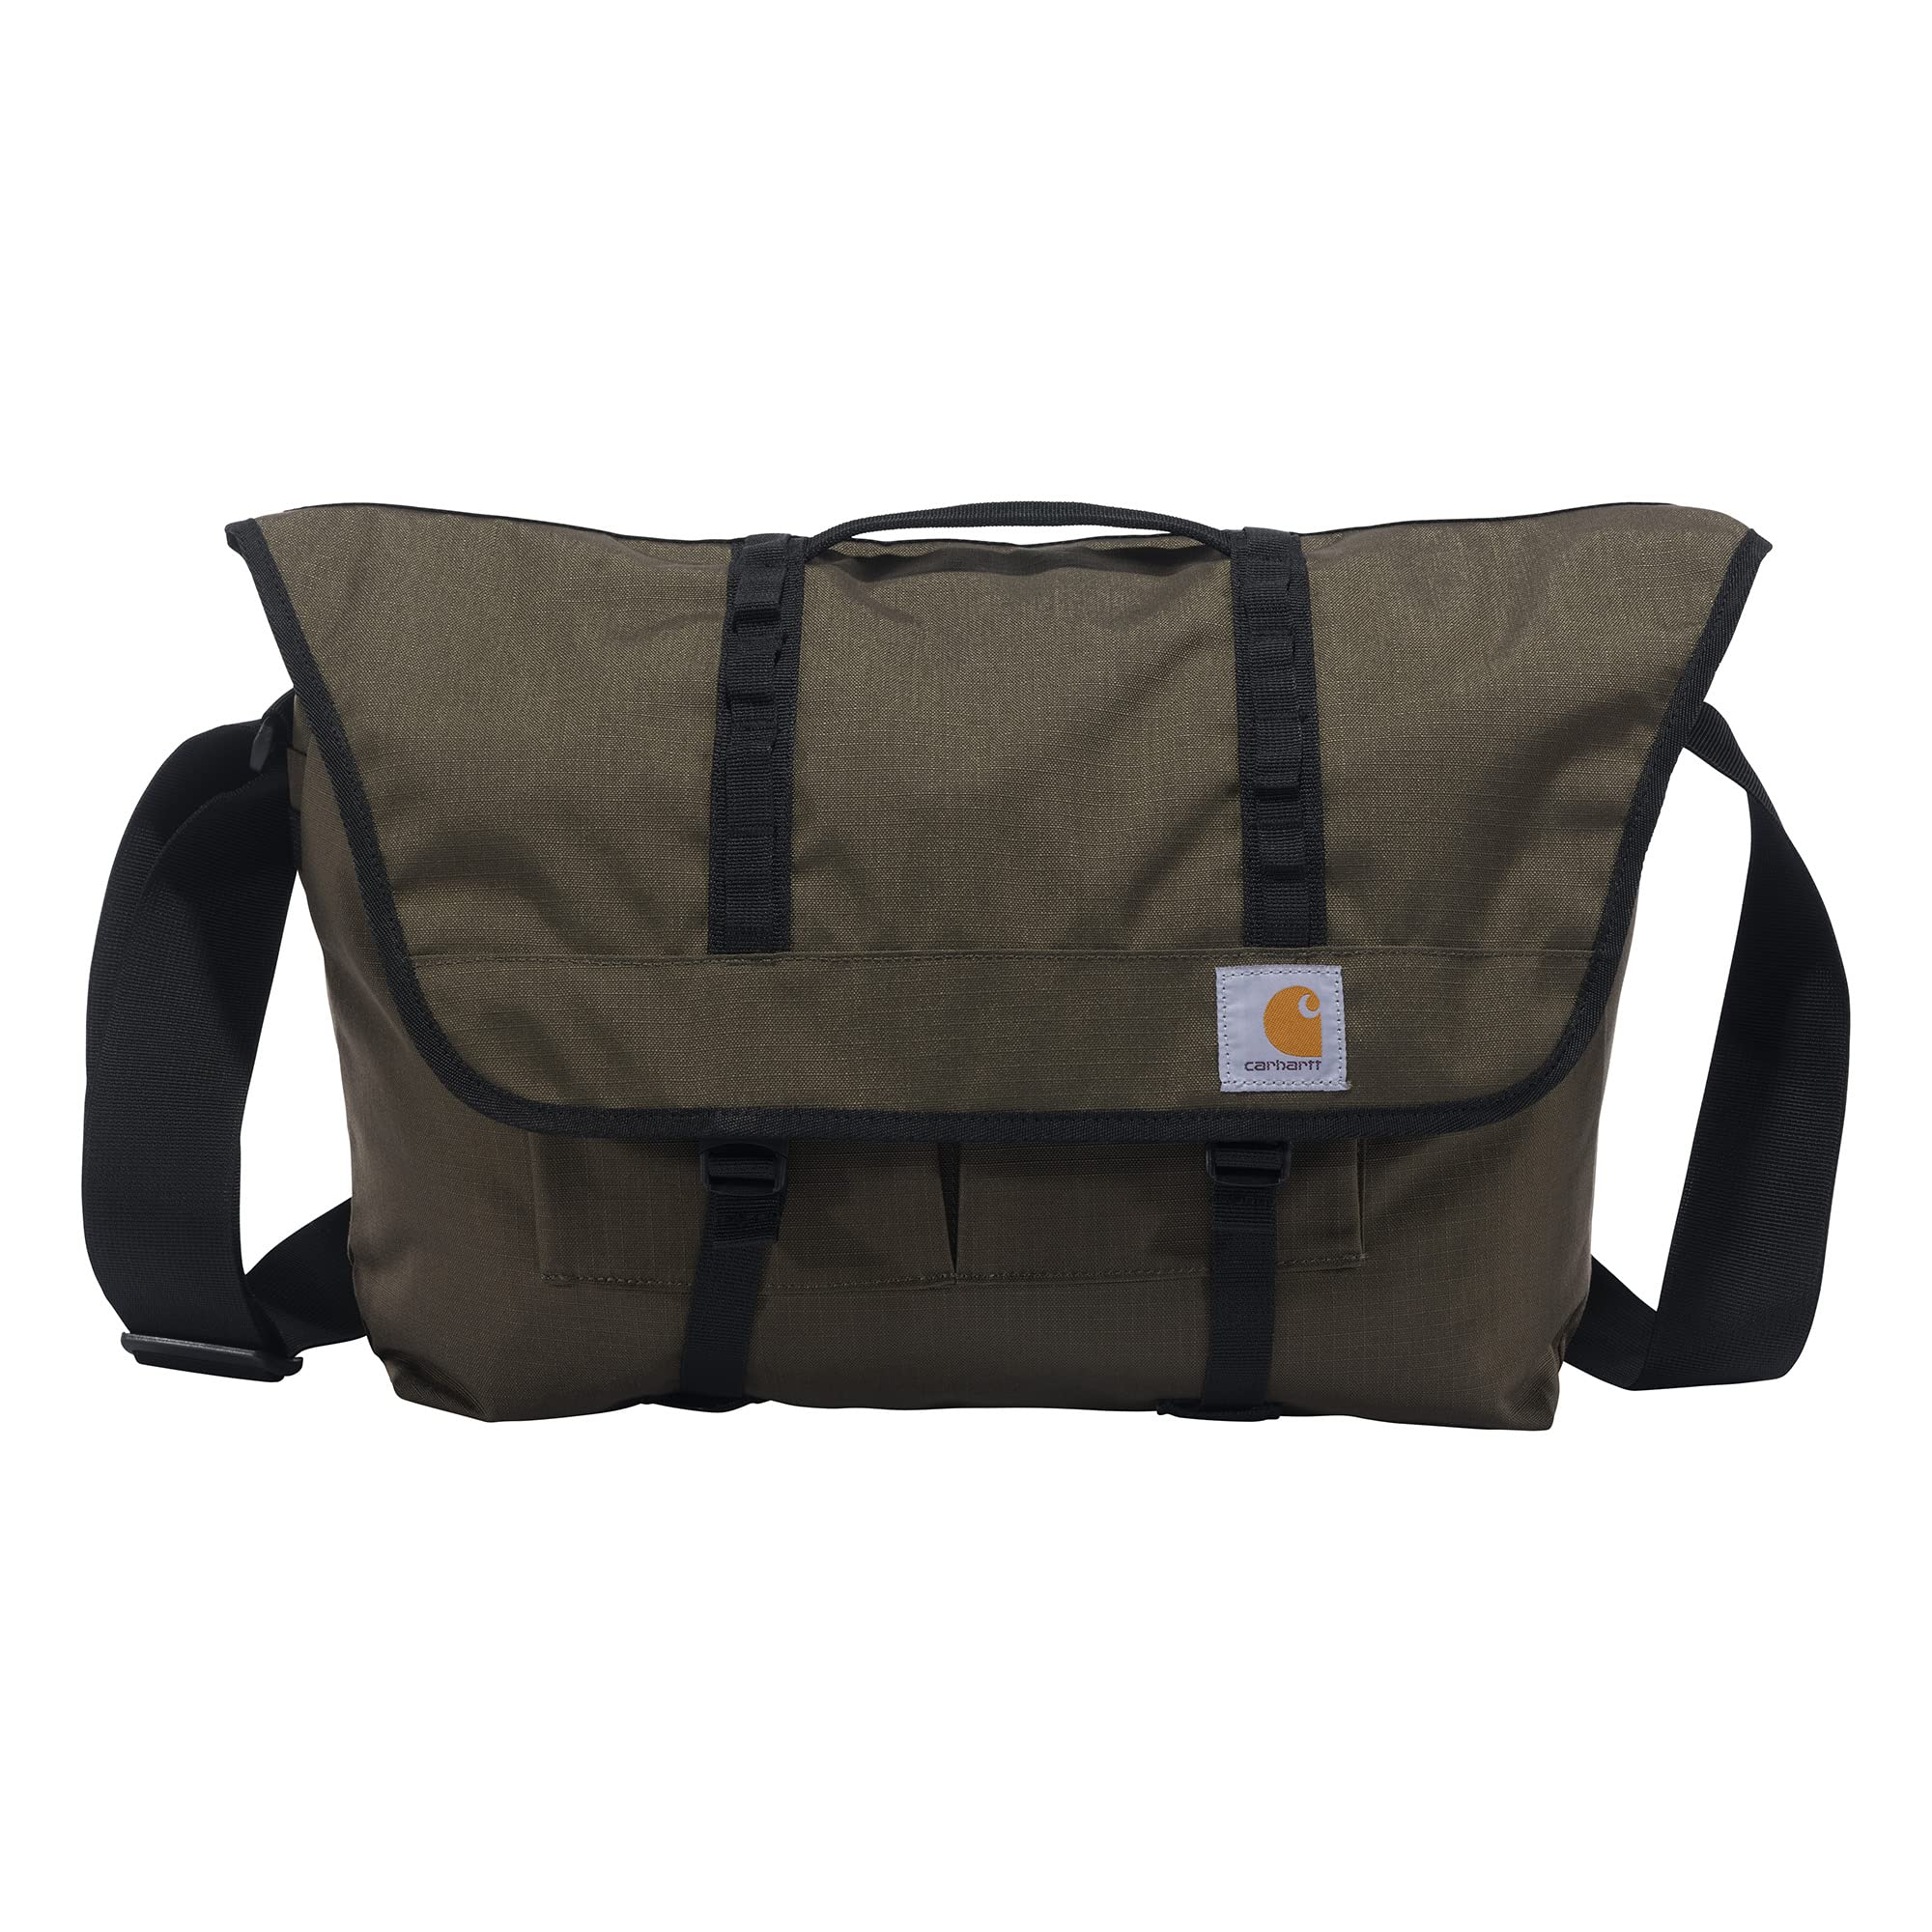 Carhartt Messanger Bag, Tarmac, Large